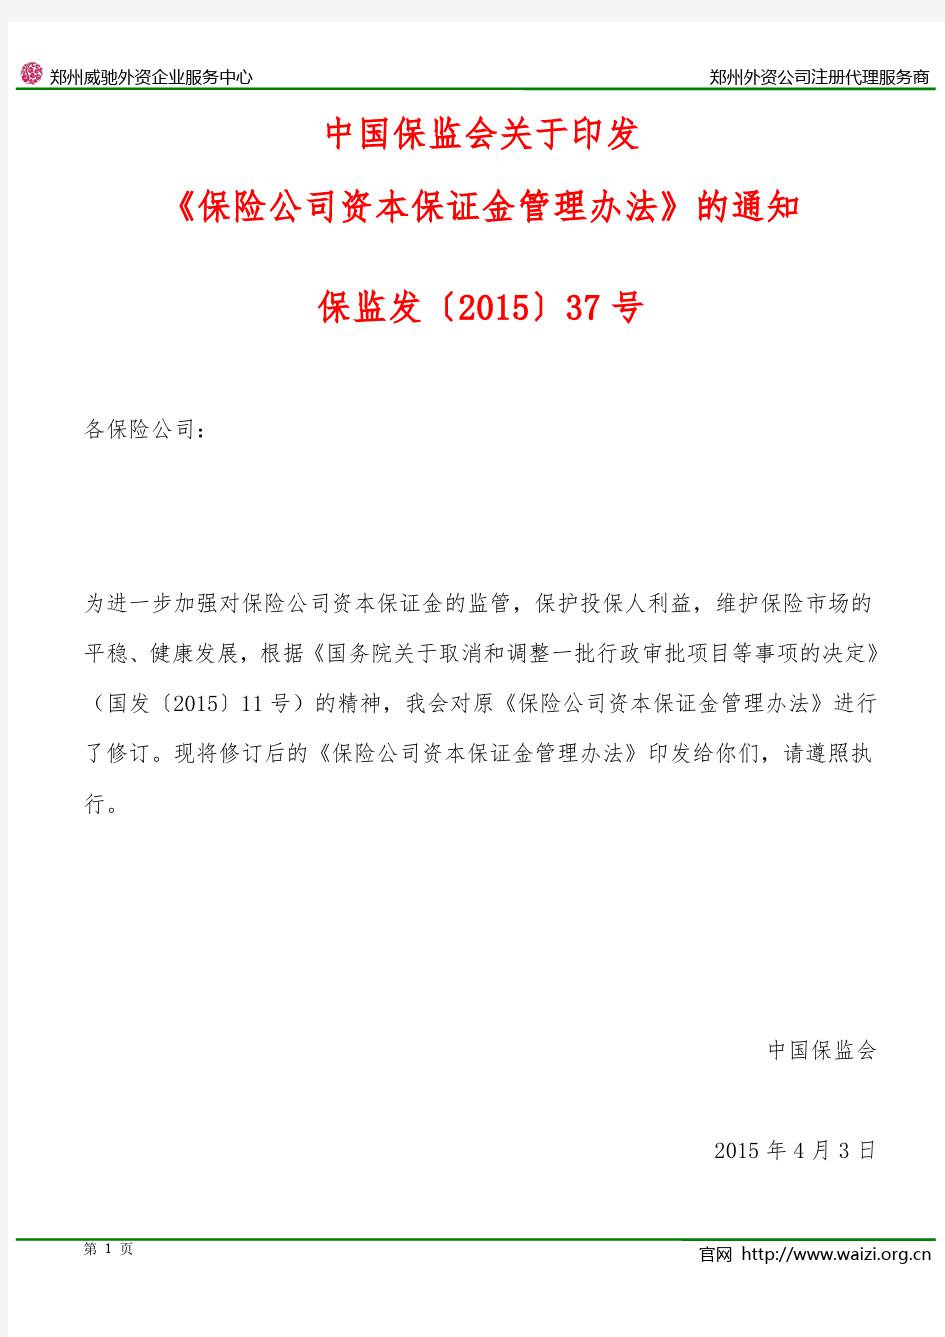 保监发〔2015〕37号 中国保监会关于印发《保险公司资本保证金管理办法》的通知